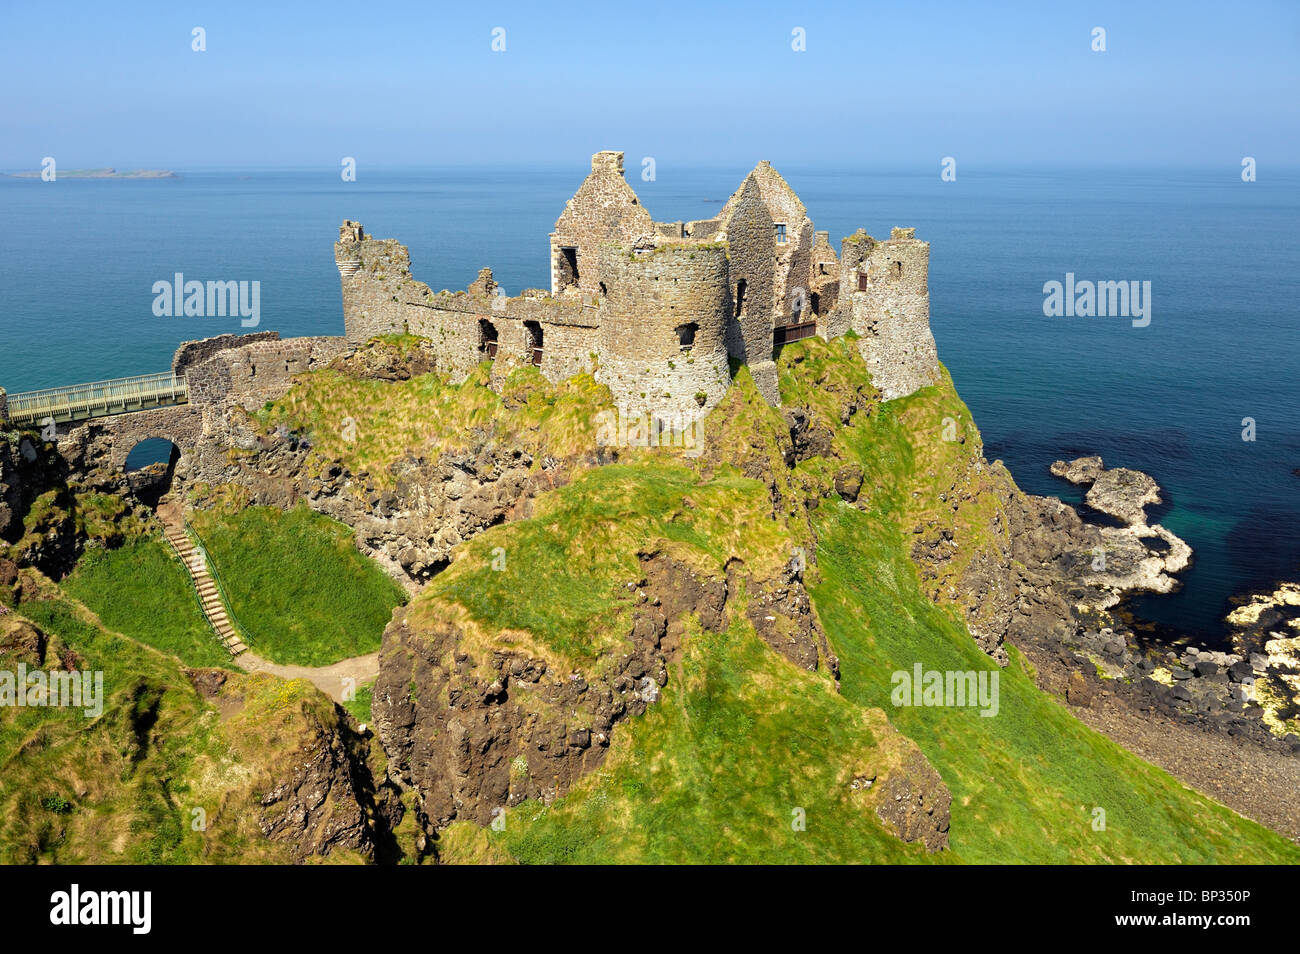 Le Château de Dunluce, ruine médiévale entre Portrush et sur la côte nord d'Antrim Bushmills Road, comté d'Antrim, en Irlande du Nord Banque D'Images